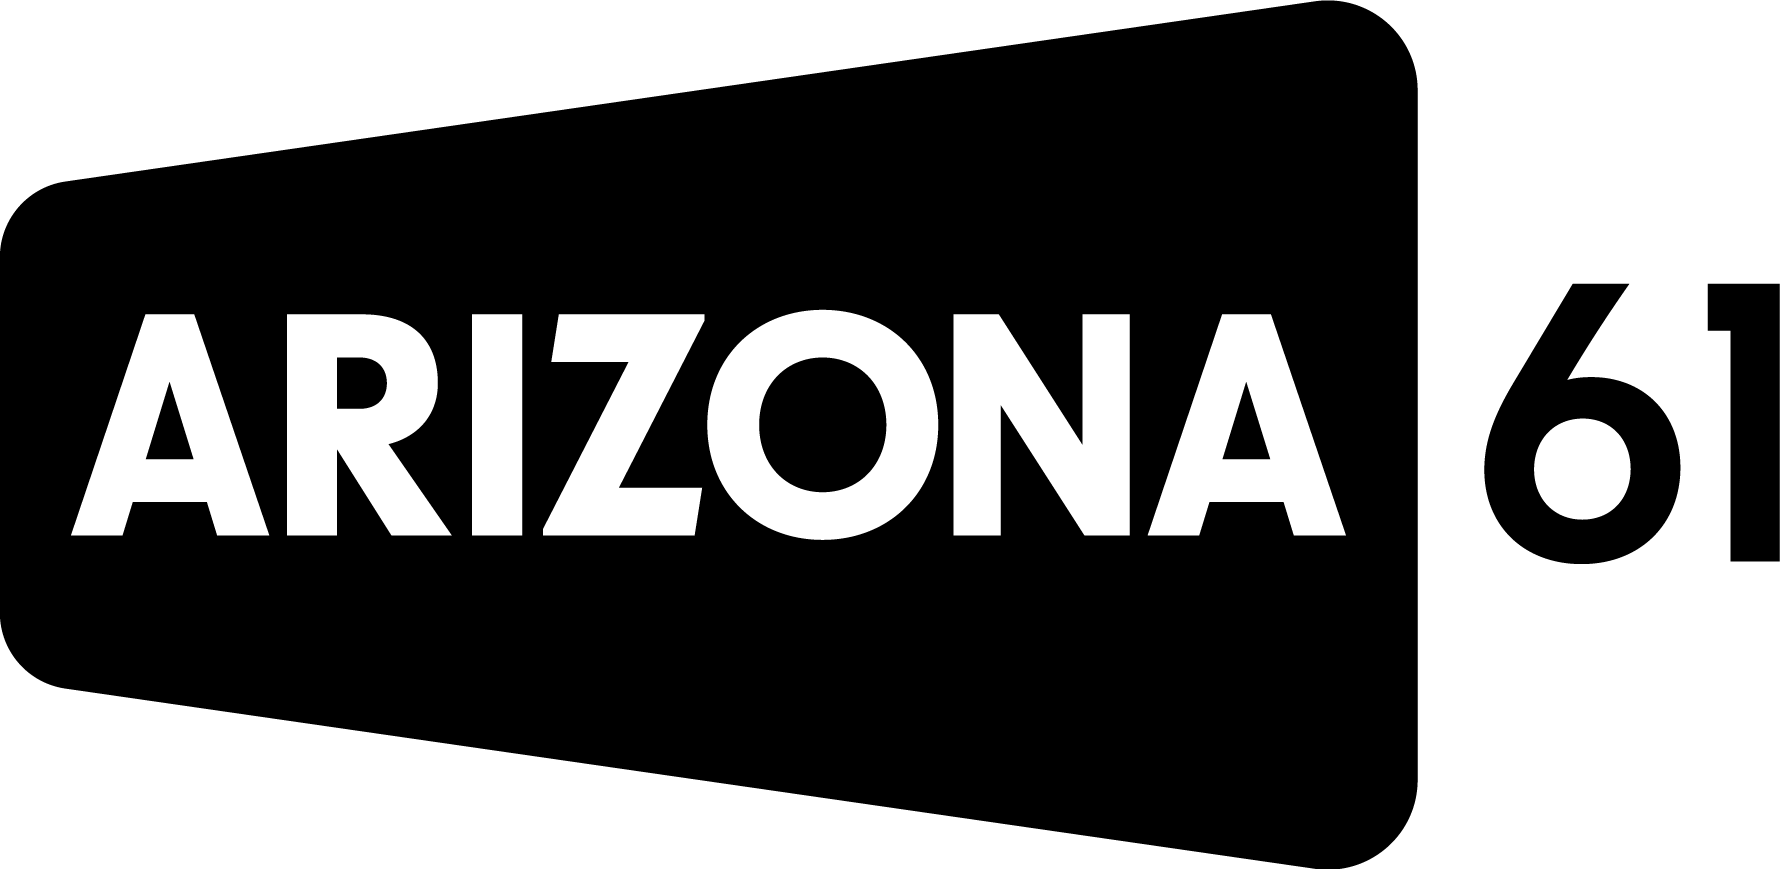 Arizona 61 logo in black